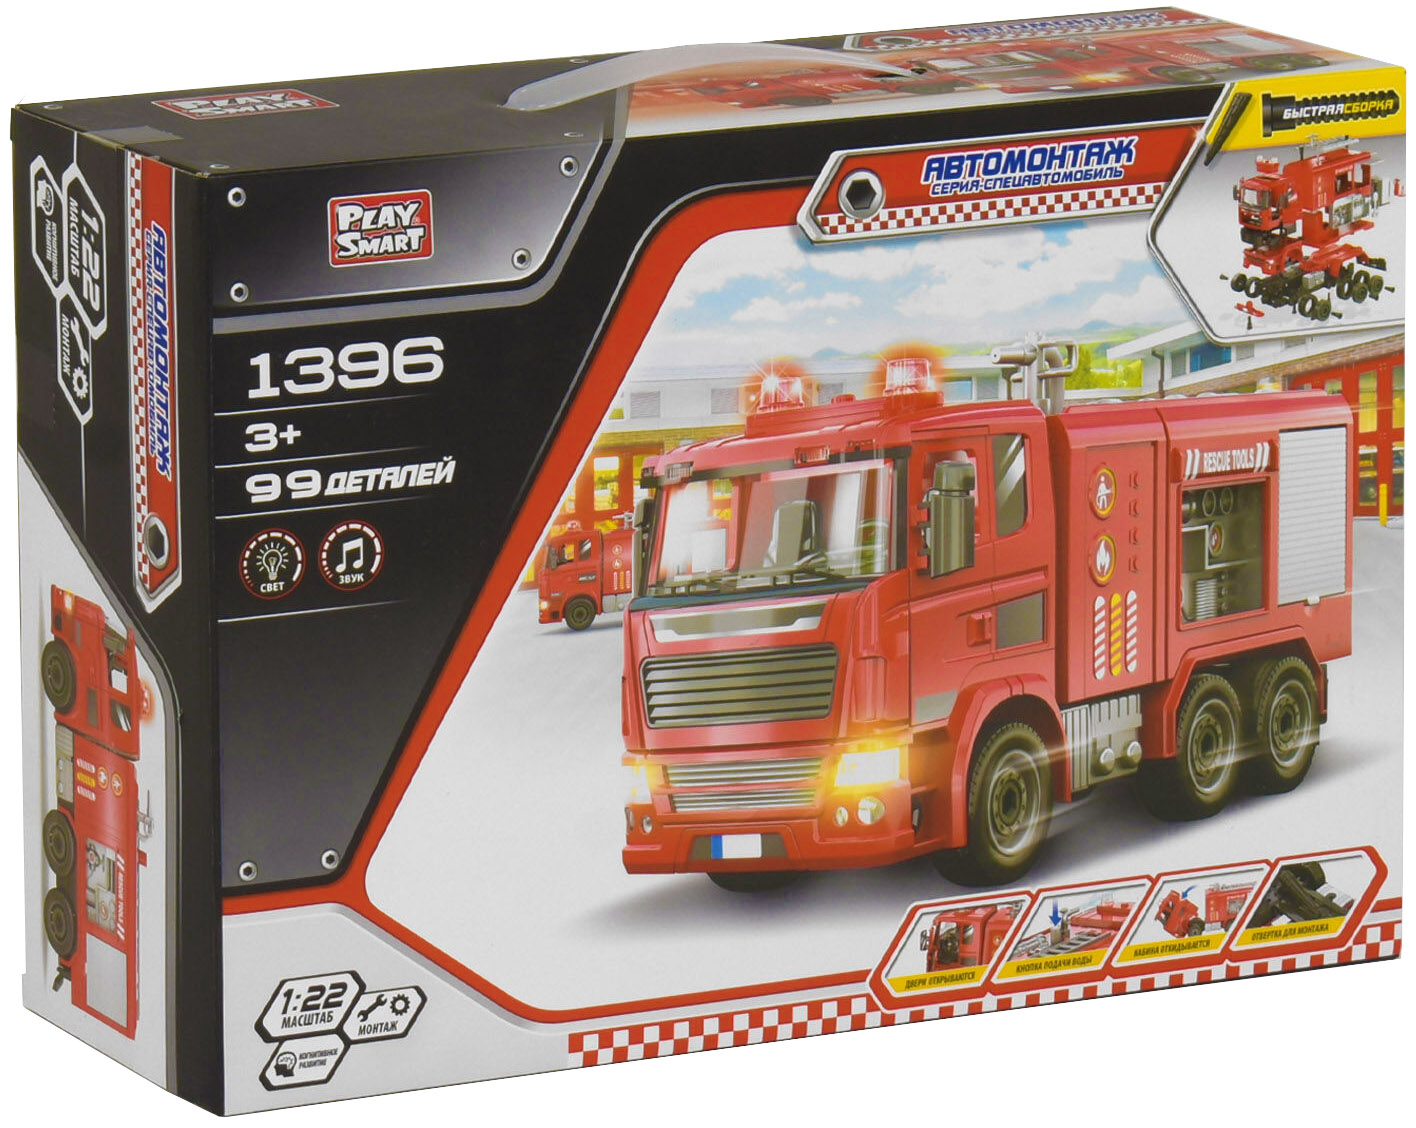 Конструктор с отверткой Play Smart Автомонтаж «Пожарная машина» 1396, 99 деталей, свет и звук